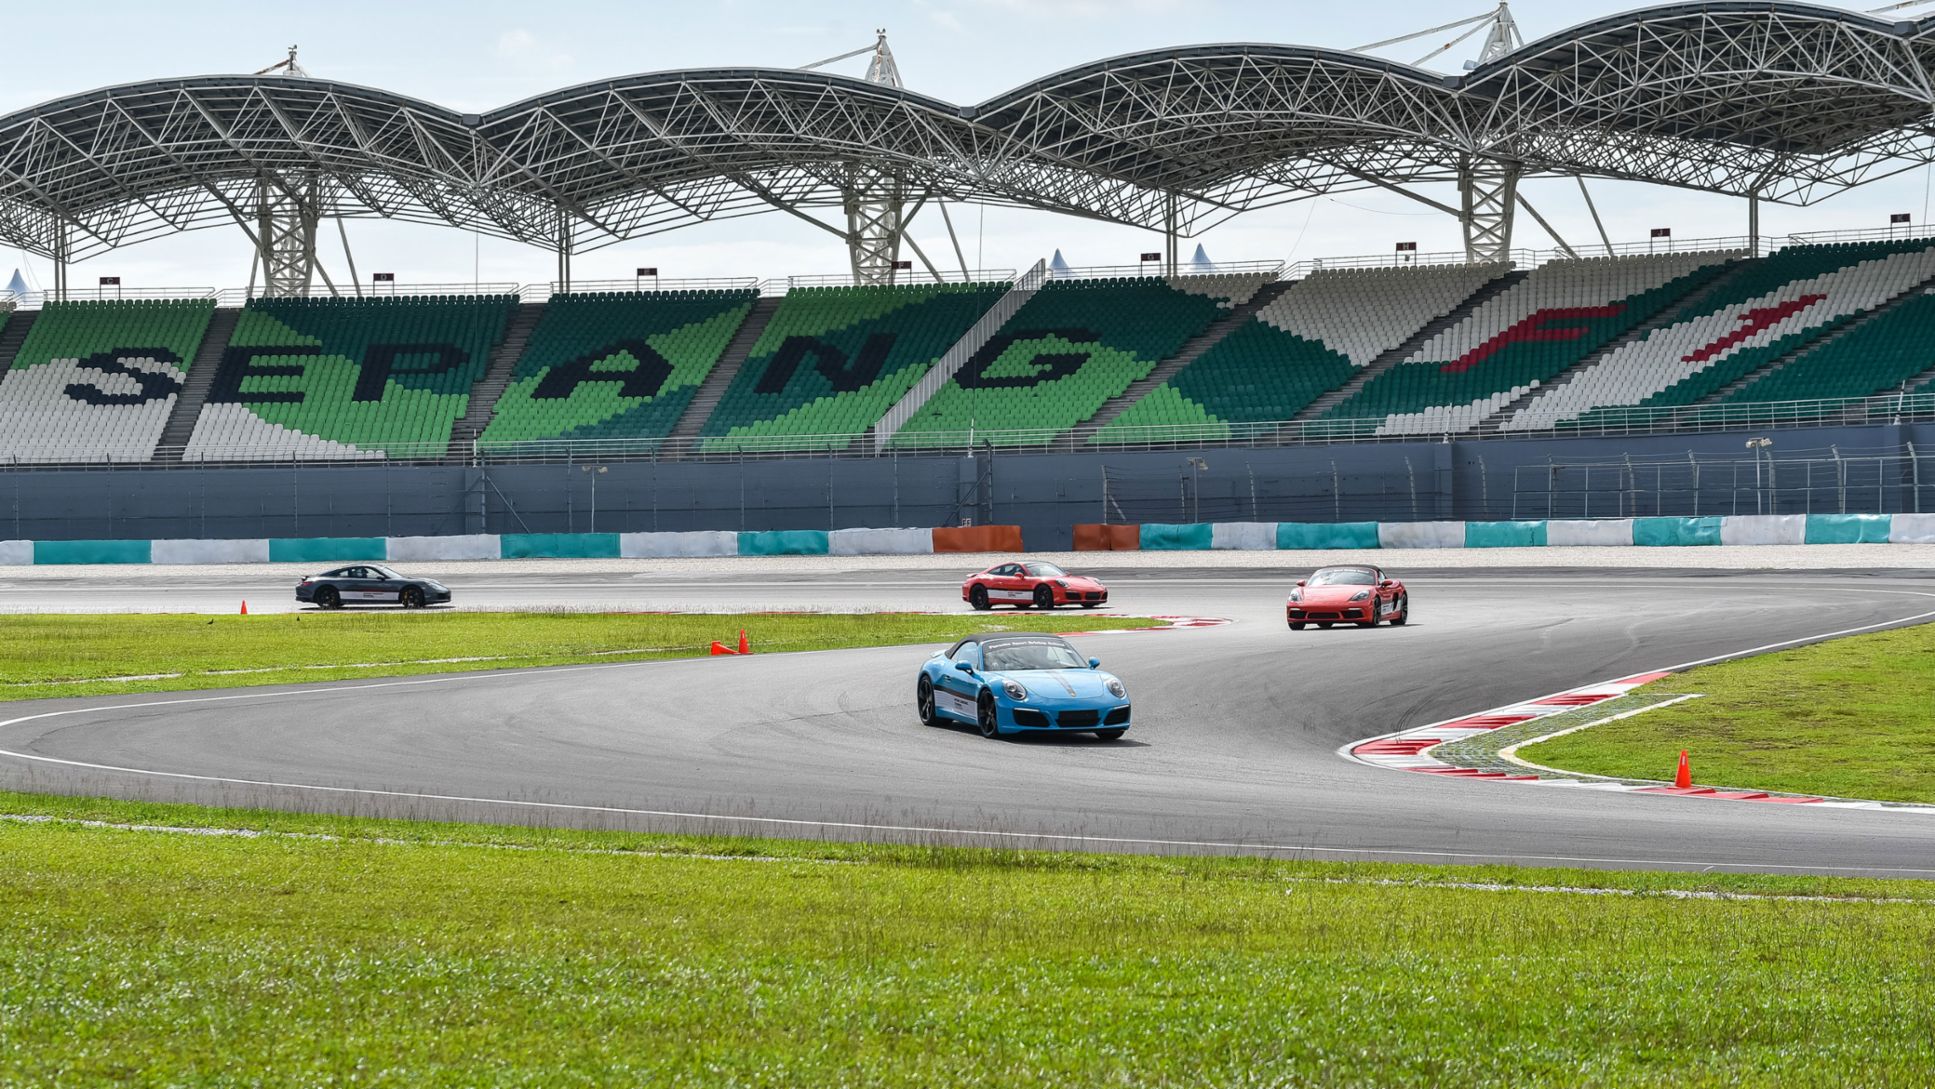 911 Turbo, 911 Turbo S, Porsche Driving Experience, Sepang, Malaysia, 2017, Porsche AG